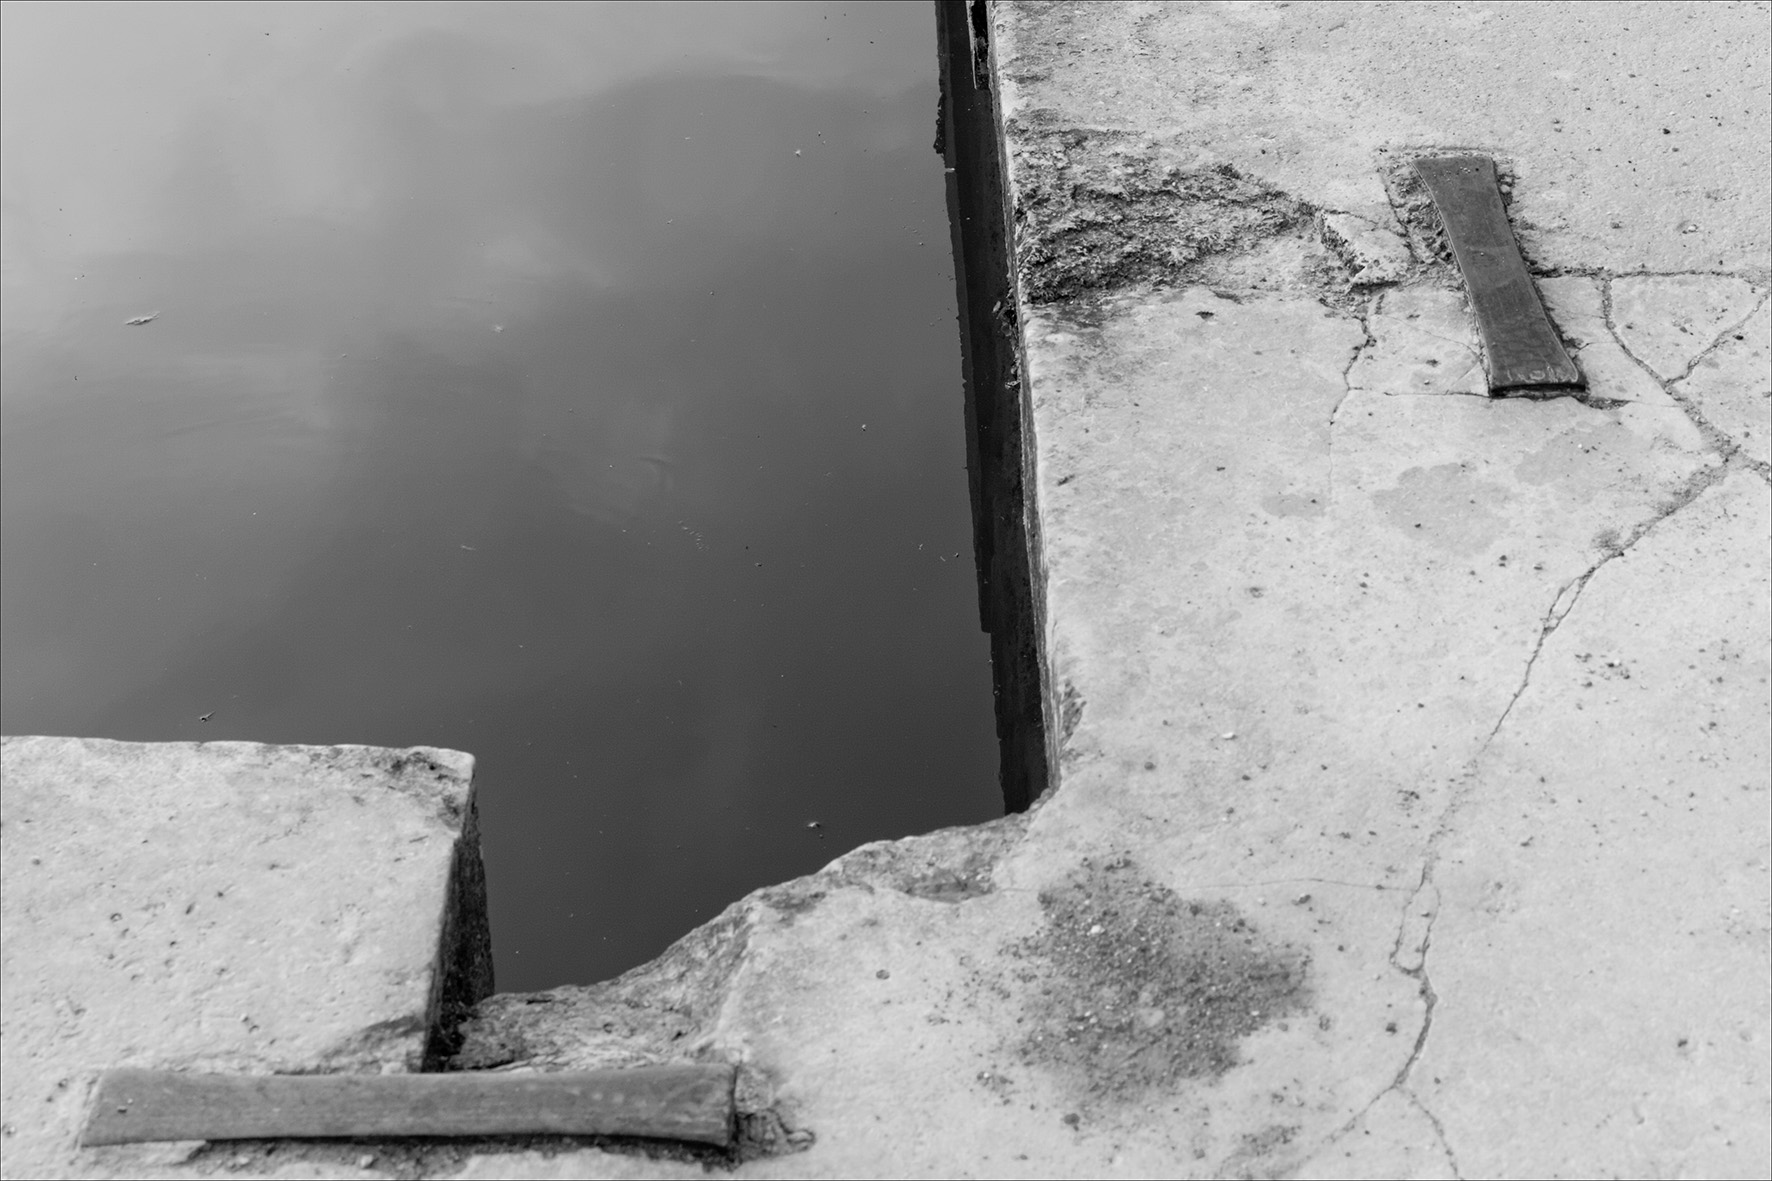 01/07/2012/Meudon, les étangs / panasonic DMC-fz30 / OLIVIER MERIJON